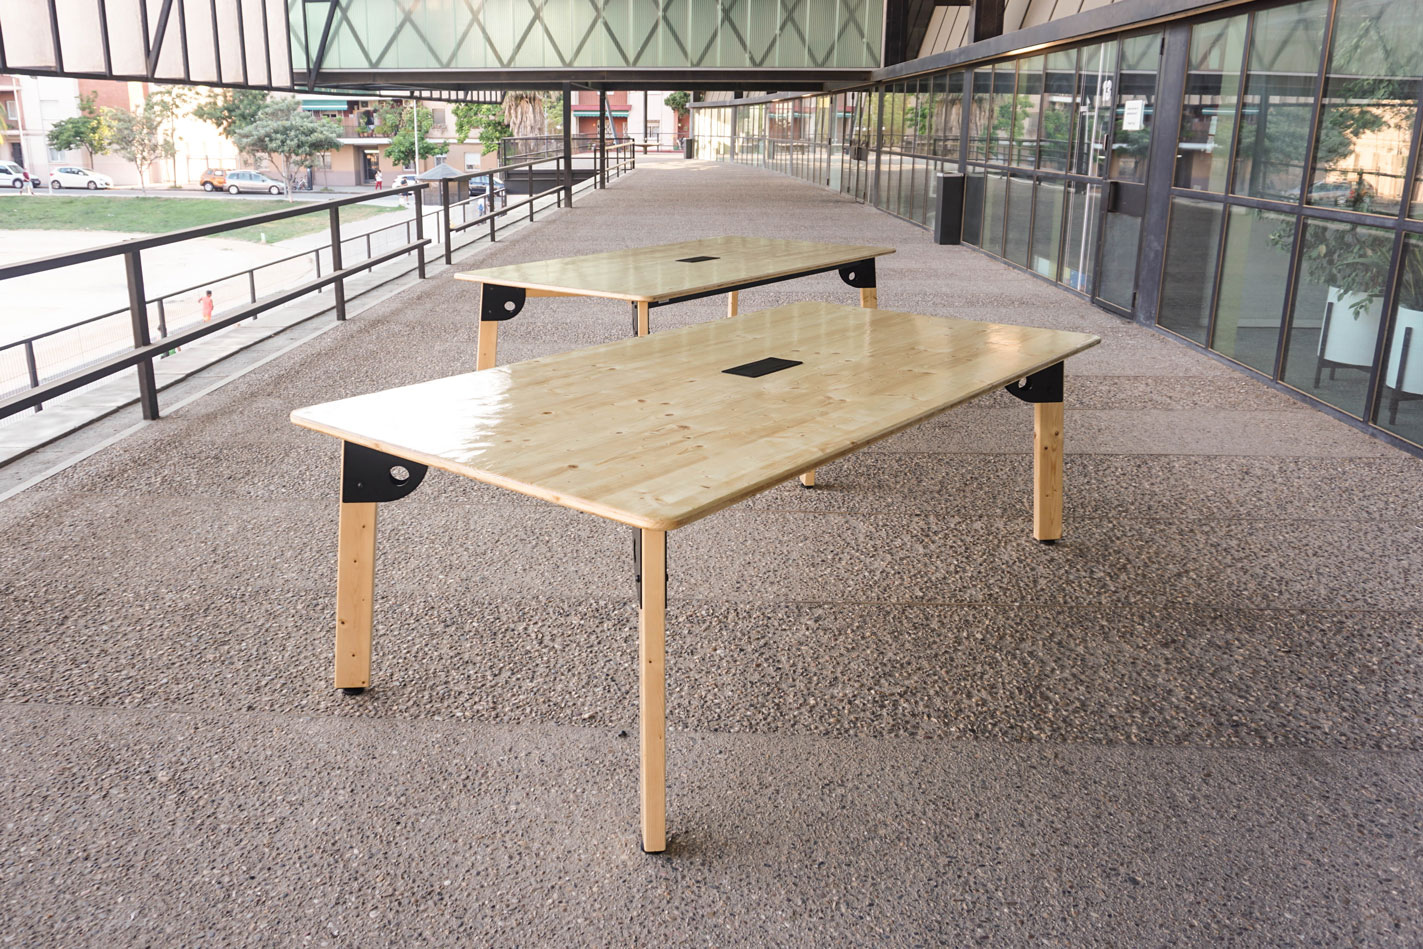 Sistema constructivo de mesas desarrollado para Decidim/Laboratorio de Innovación Democrática en Barcelona.